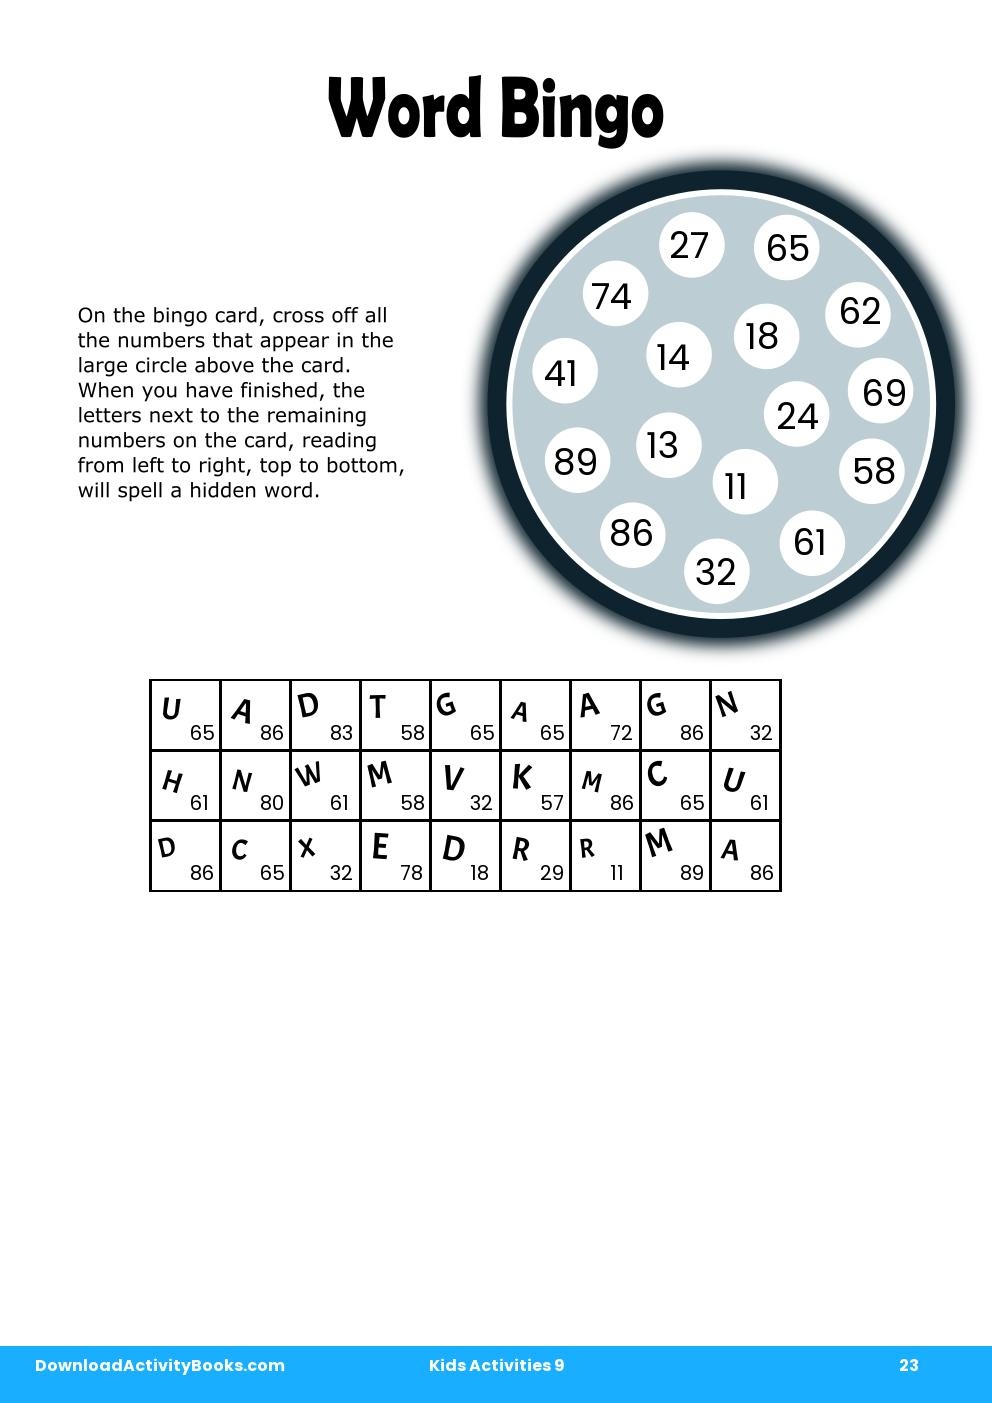 Word Bingo in Kids Activities 9